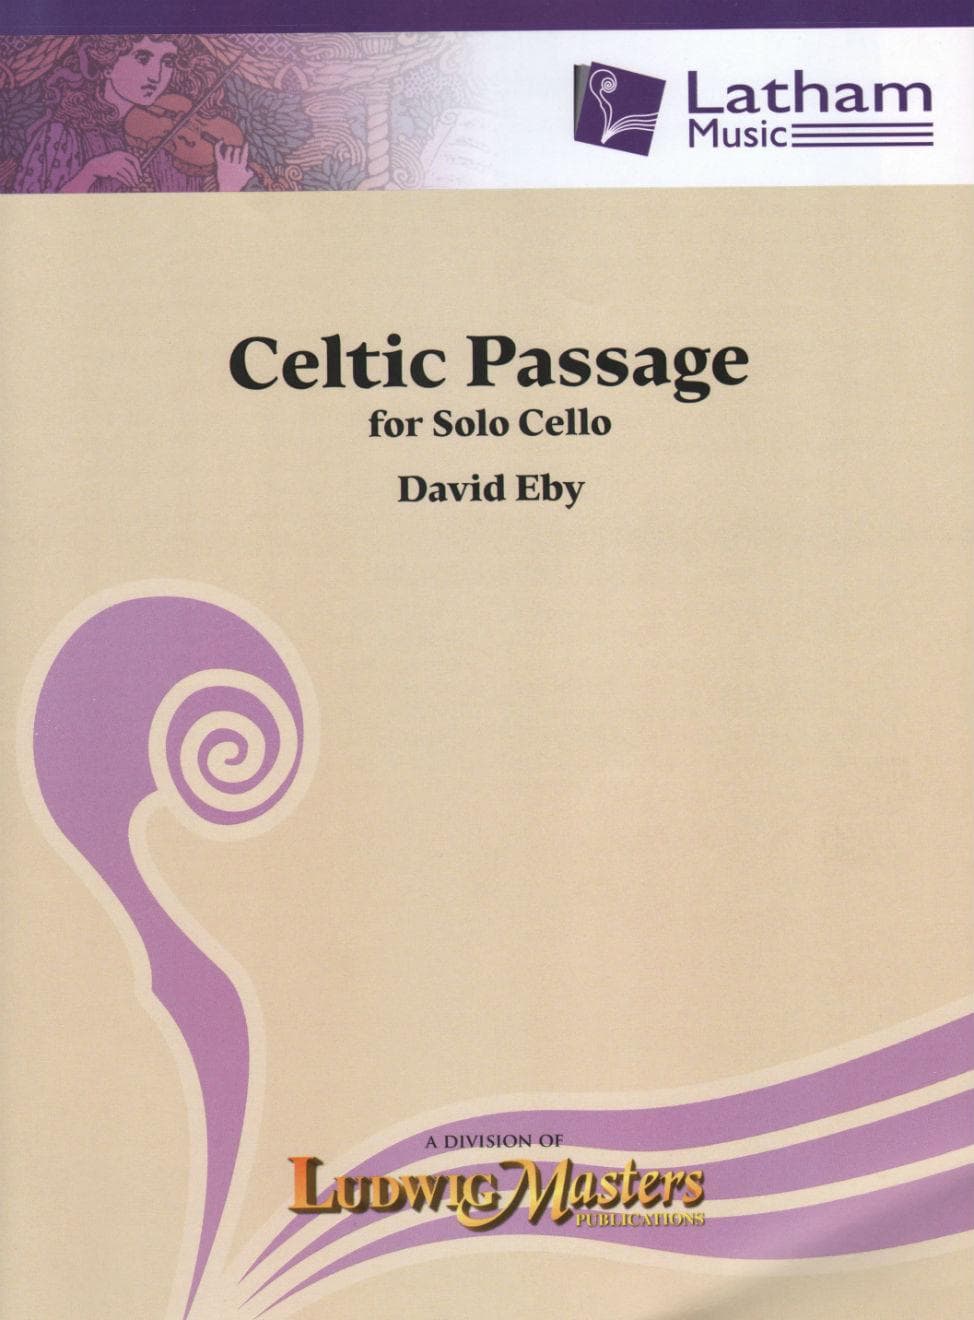 Eby, David - Celtic Passage - Cello solo - Latham Music Edition